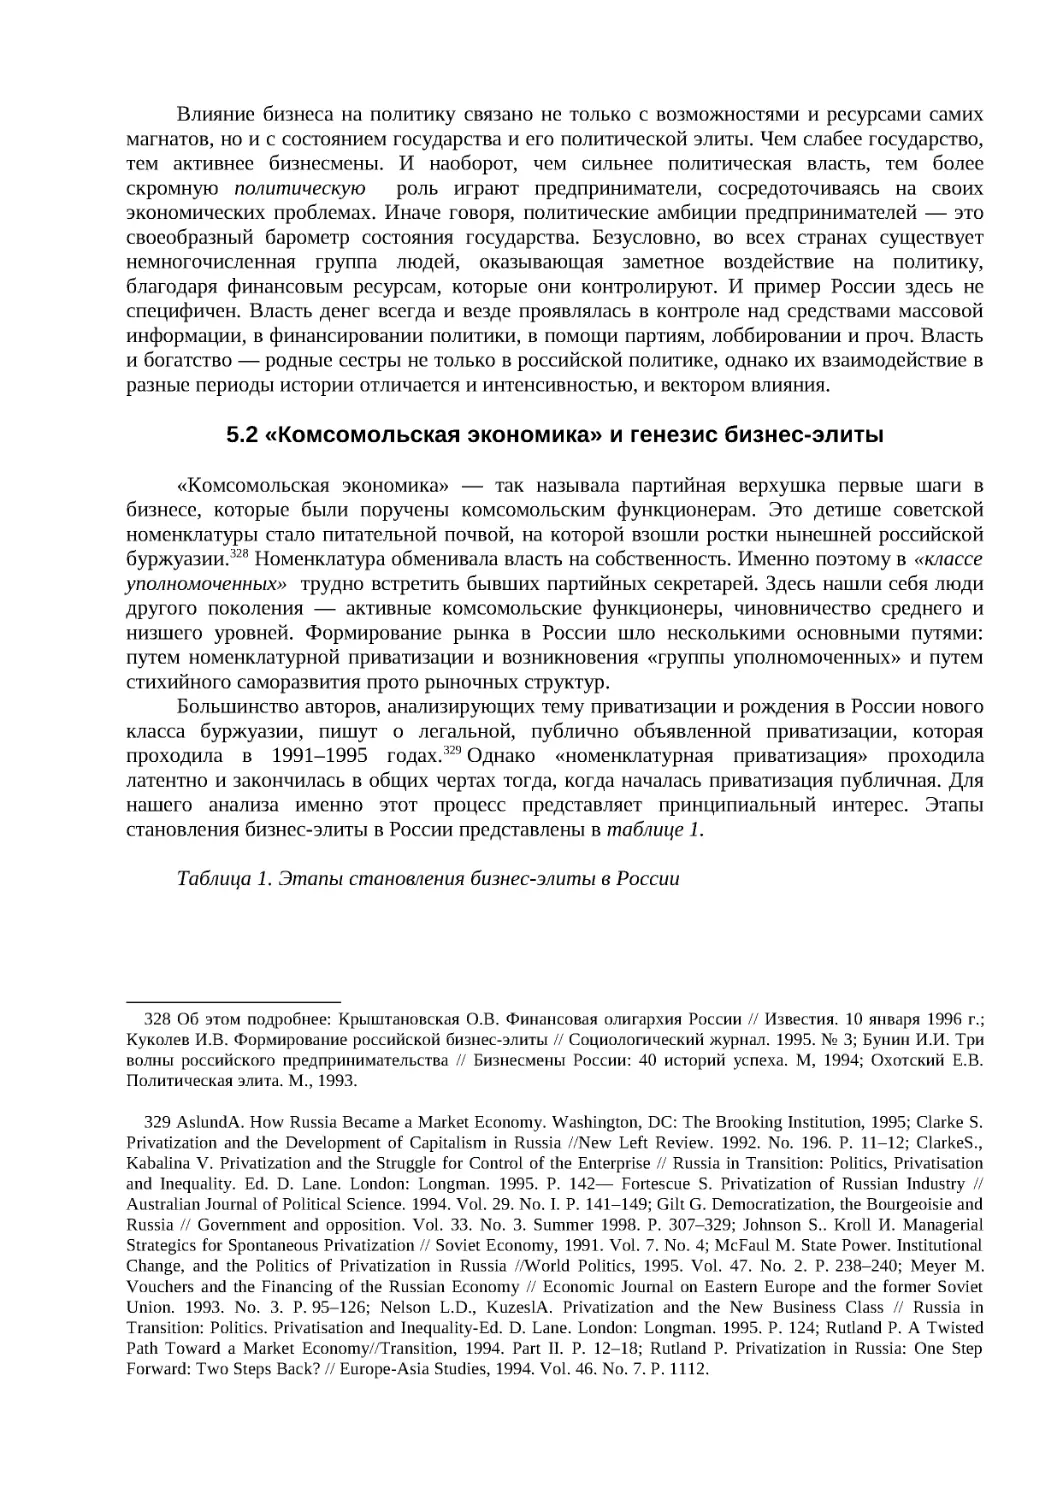 5.2 «Комсомольская экономика» и генезис бизнес-элиты